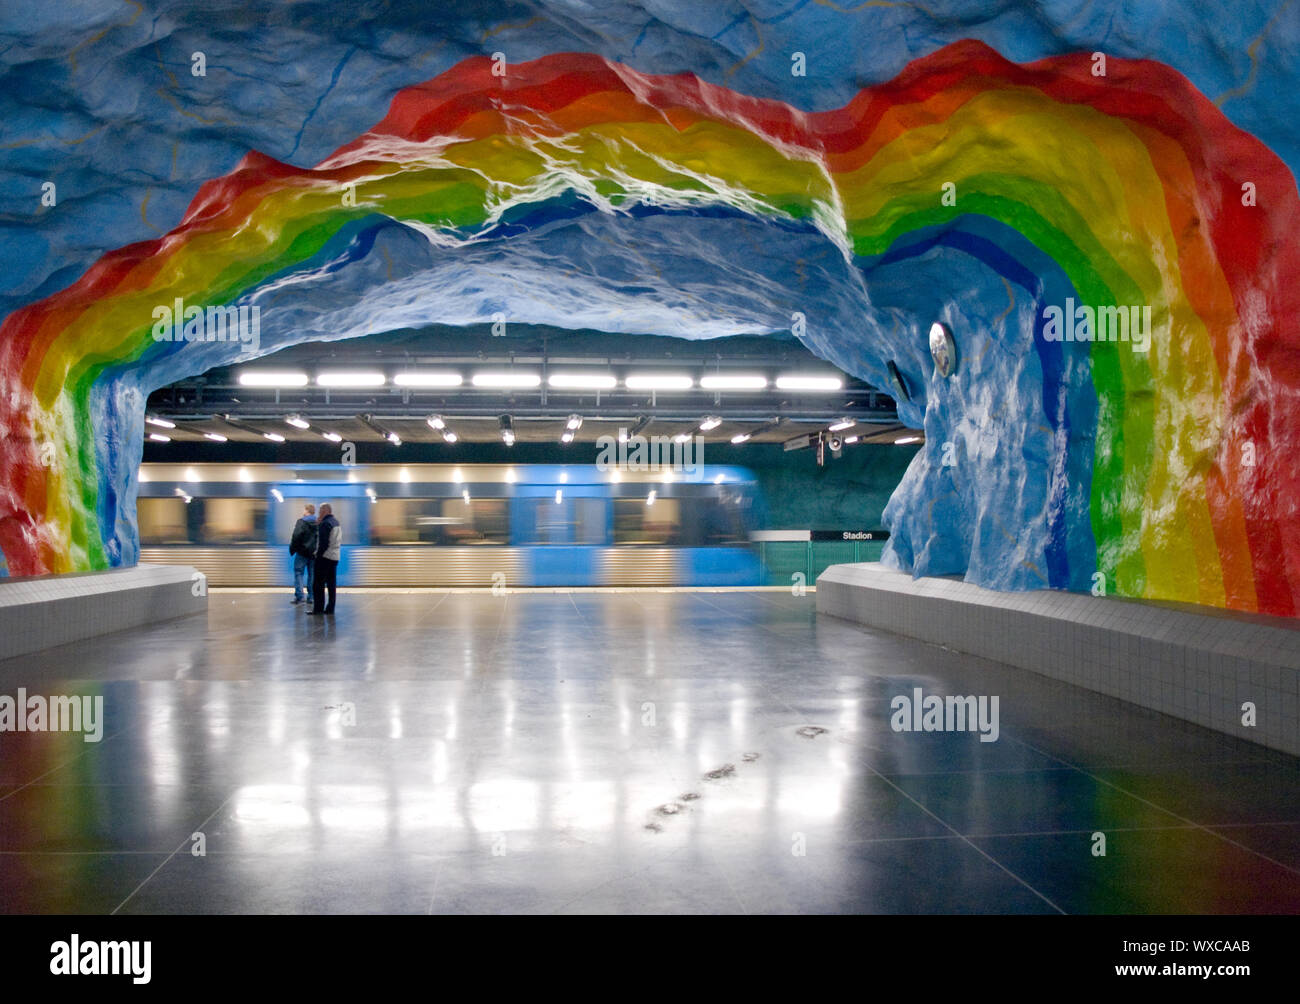 L'arcobaleno arte di Stadion Stazione della metropolitana di Stoccolma (Stoccolma tunnelbana system). Stoccolma, Svezia. Foto Stock